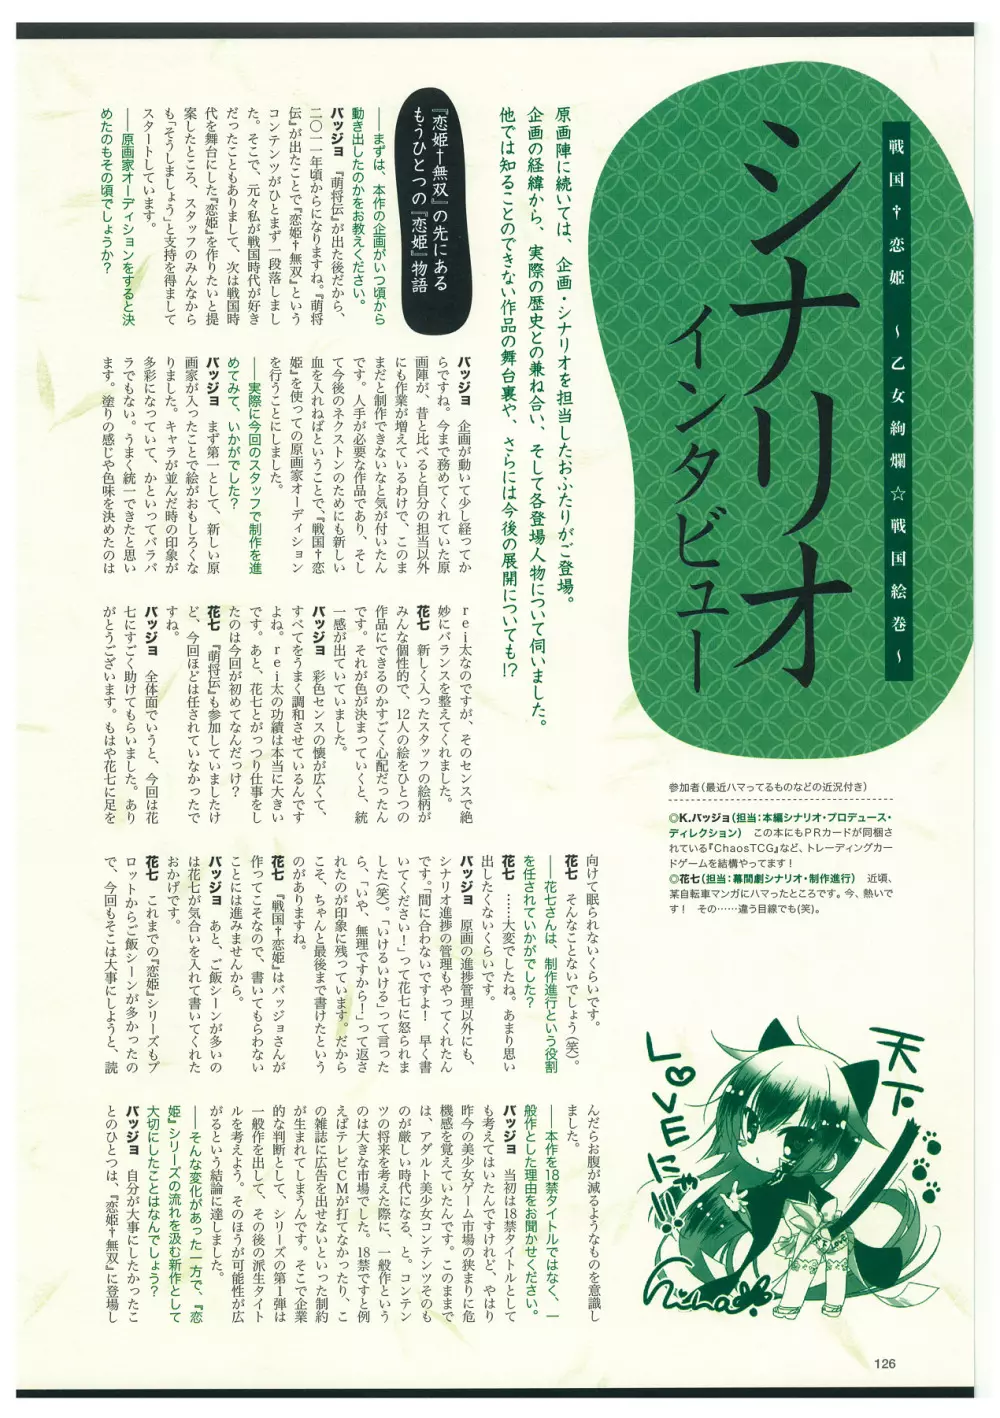 戦国†恋姫 ～乙女絢爛☆戦国絵巻～ ビジュアルファンブック-2 129ページ